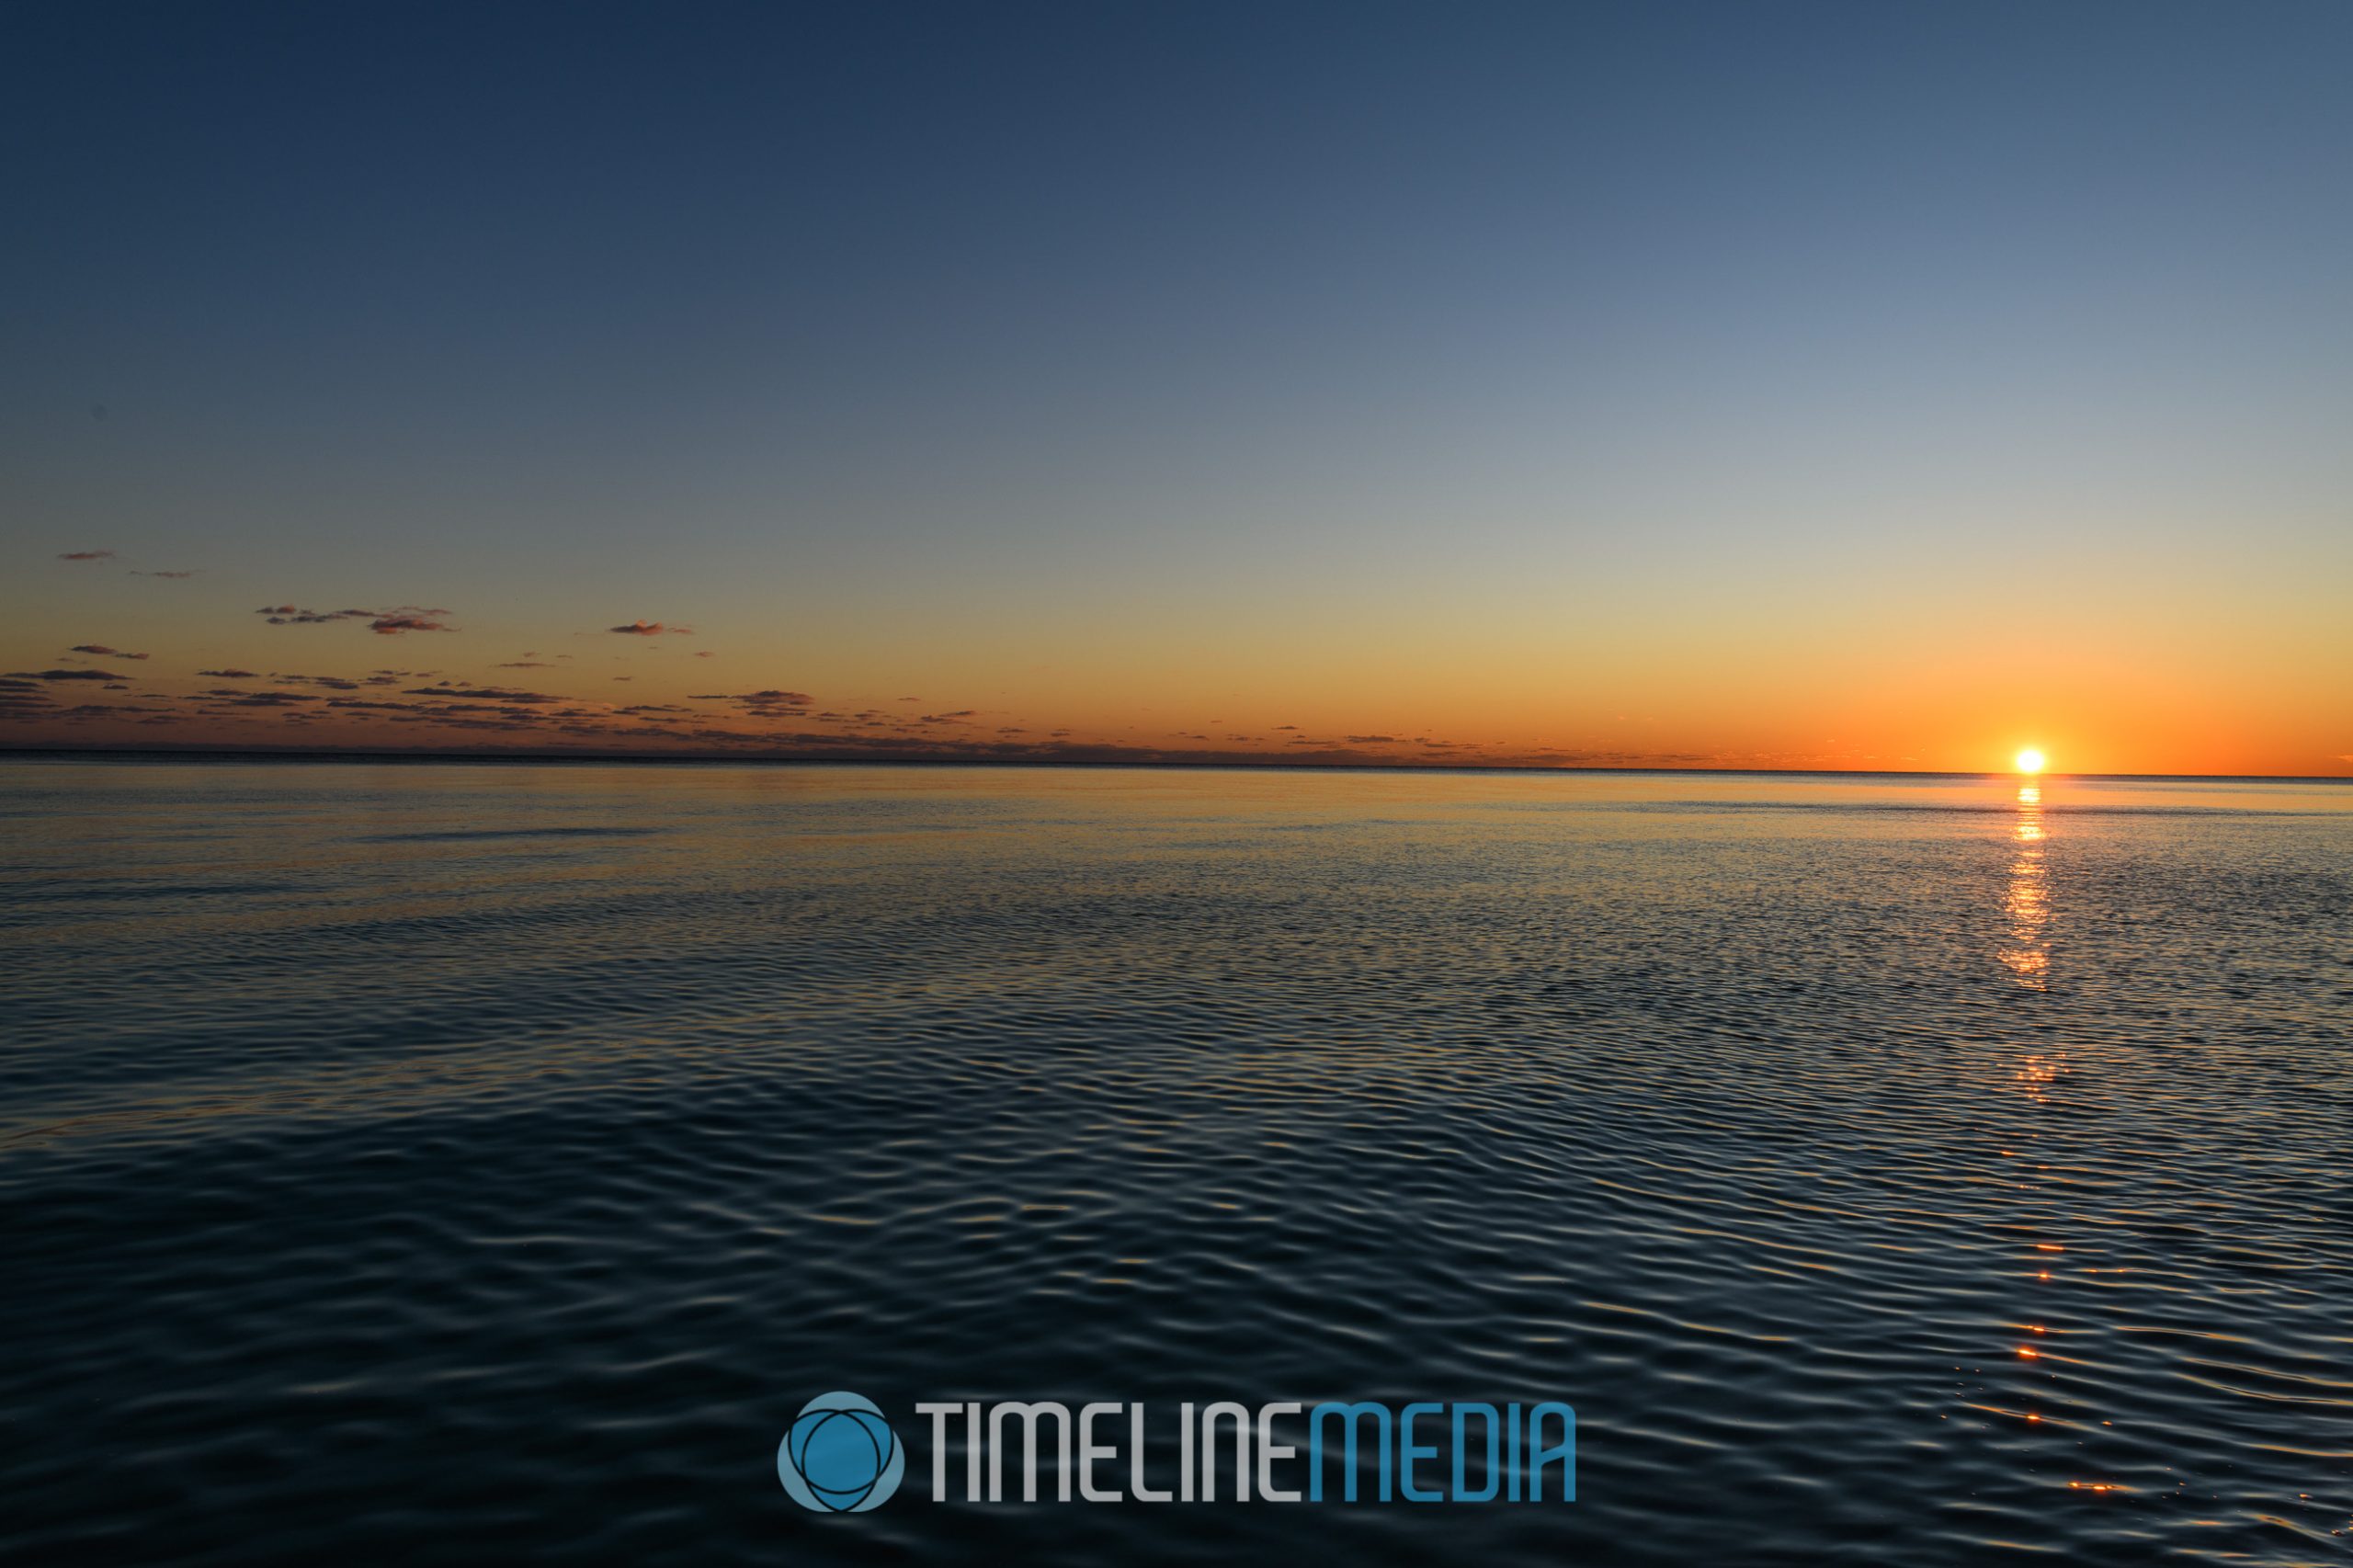 Gulf coast of Florida sunset ©TimeLine Media